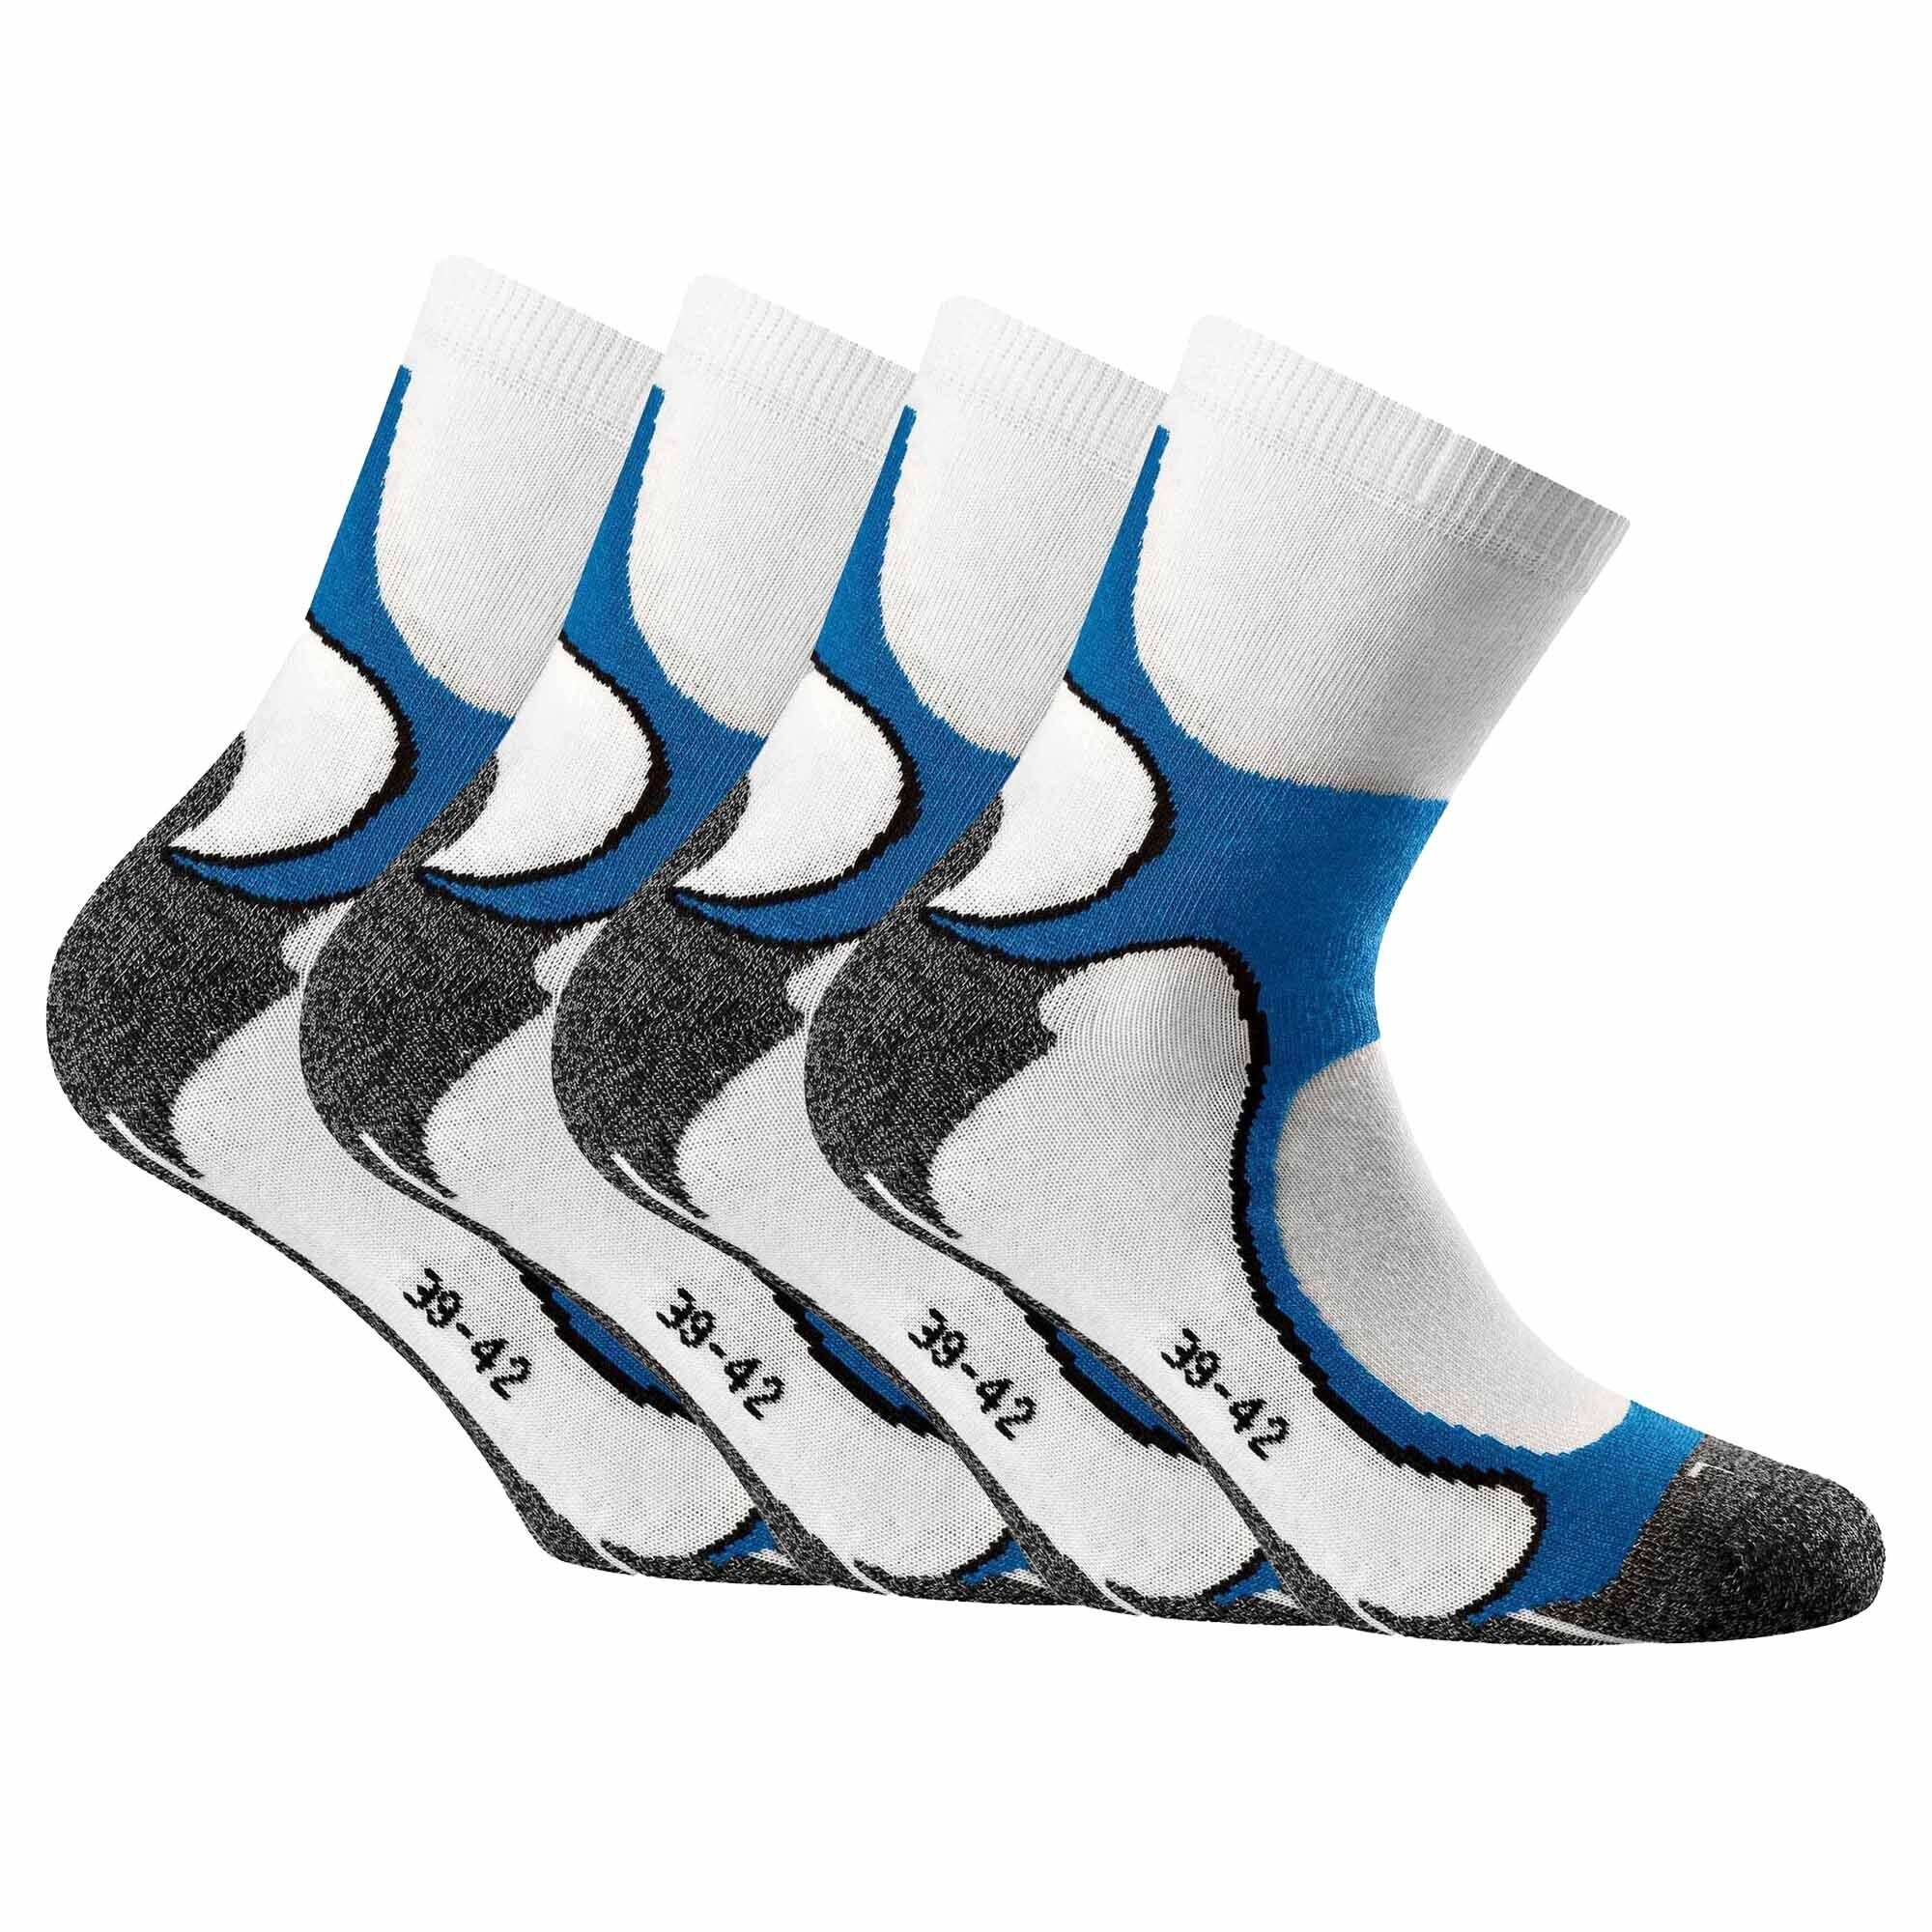 Unisex Socks Quarter - Socken, Pack Running Sportsocken 4er Weiß/Blau Rohner